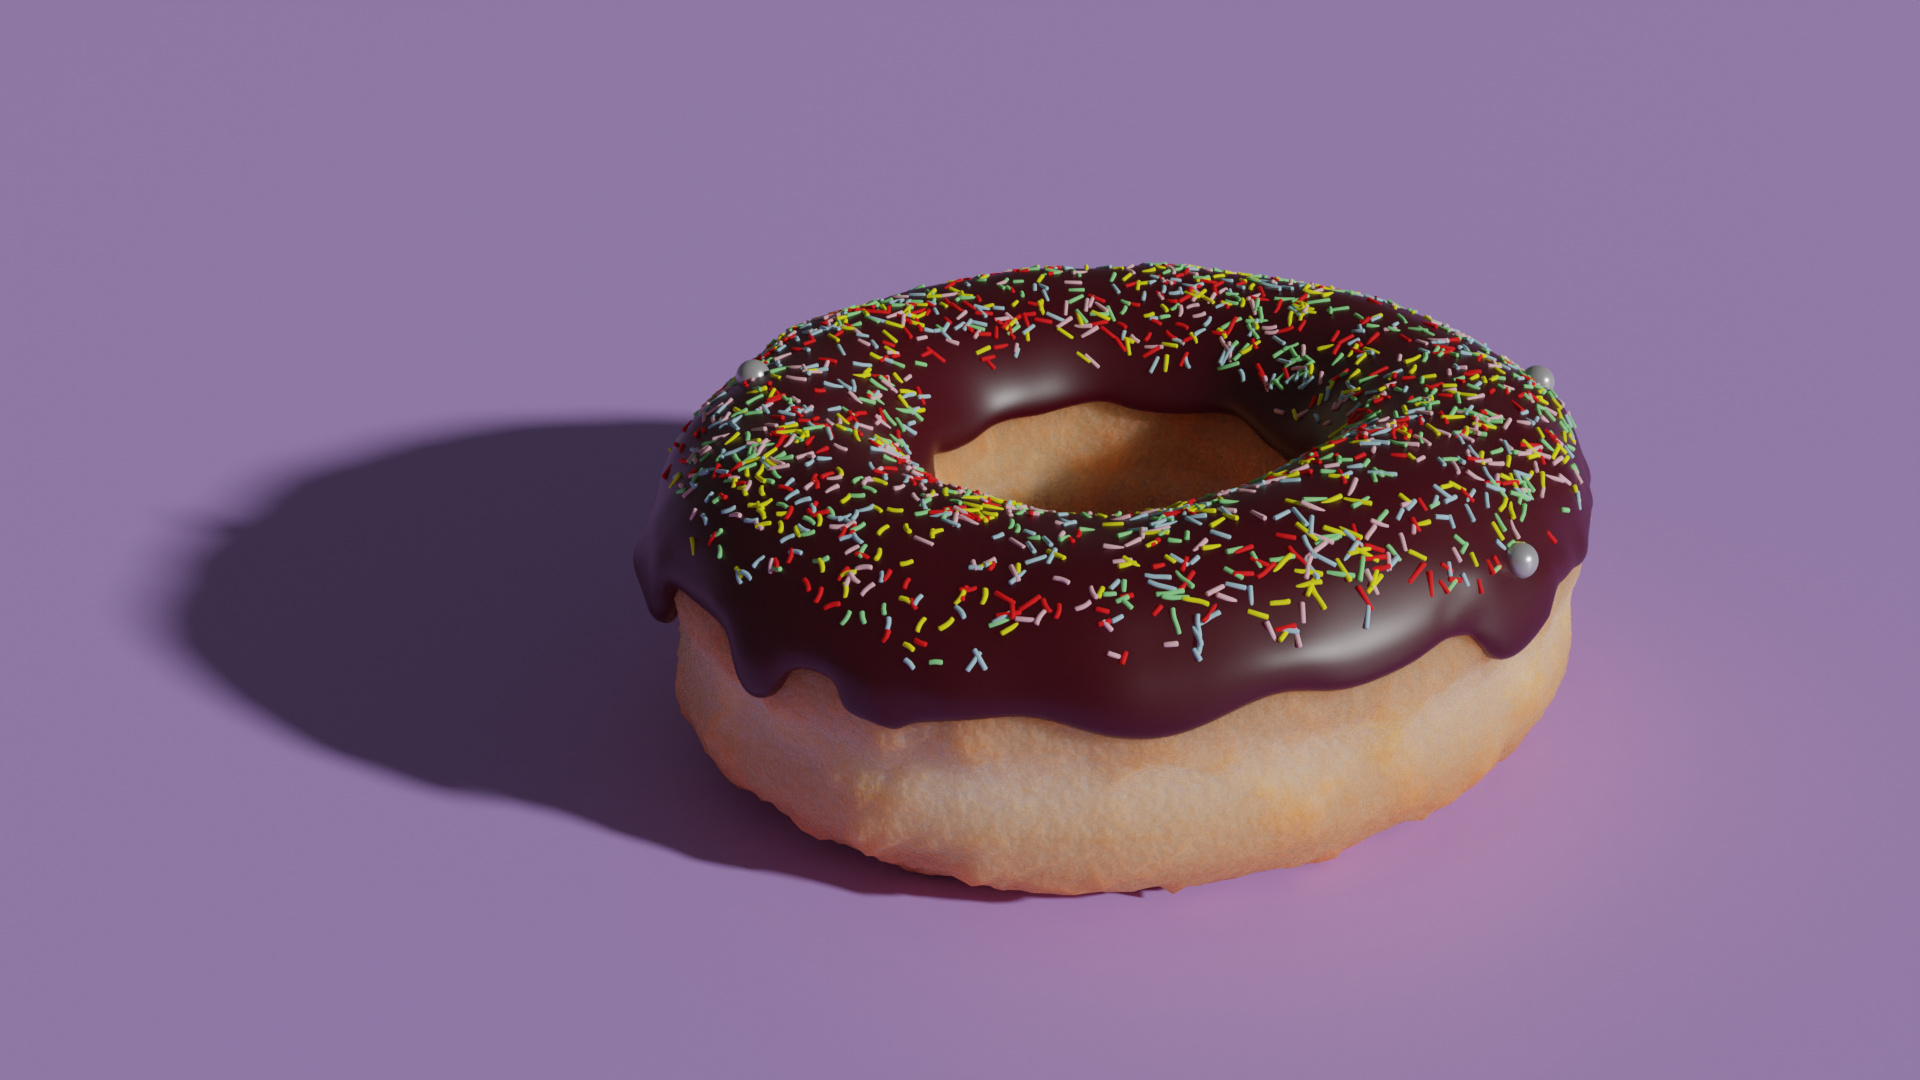 make a donut in blender